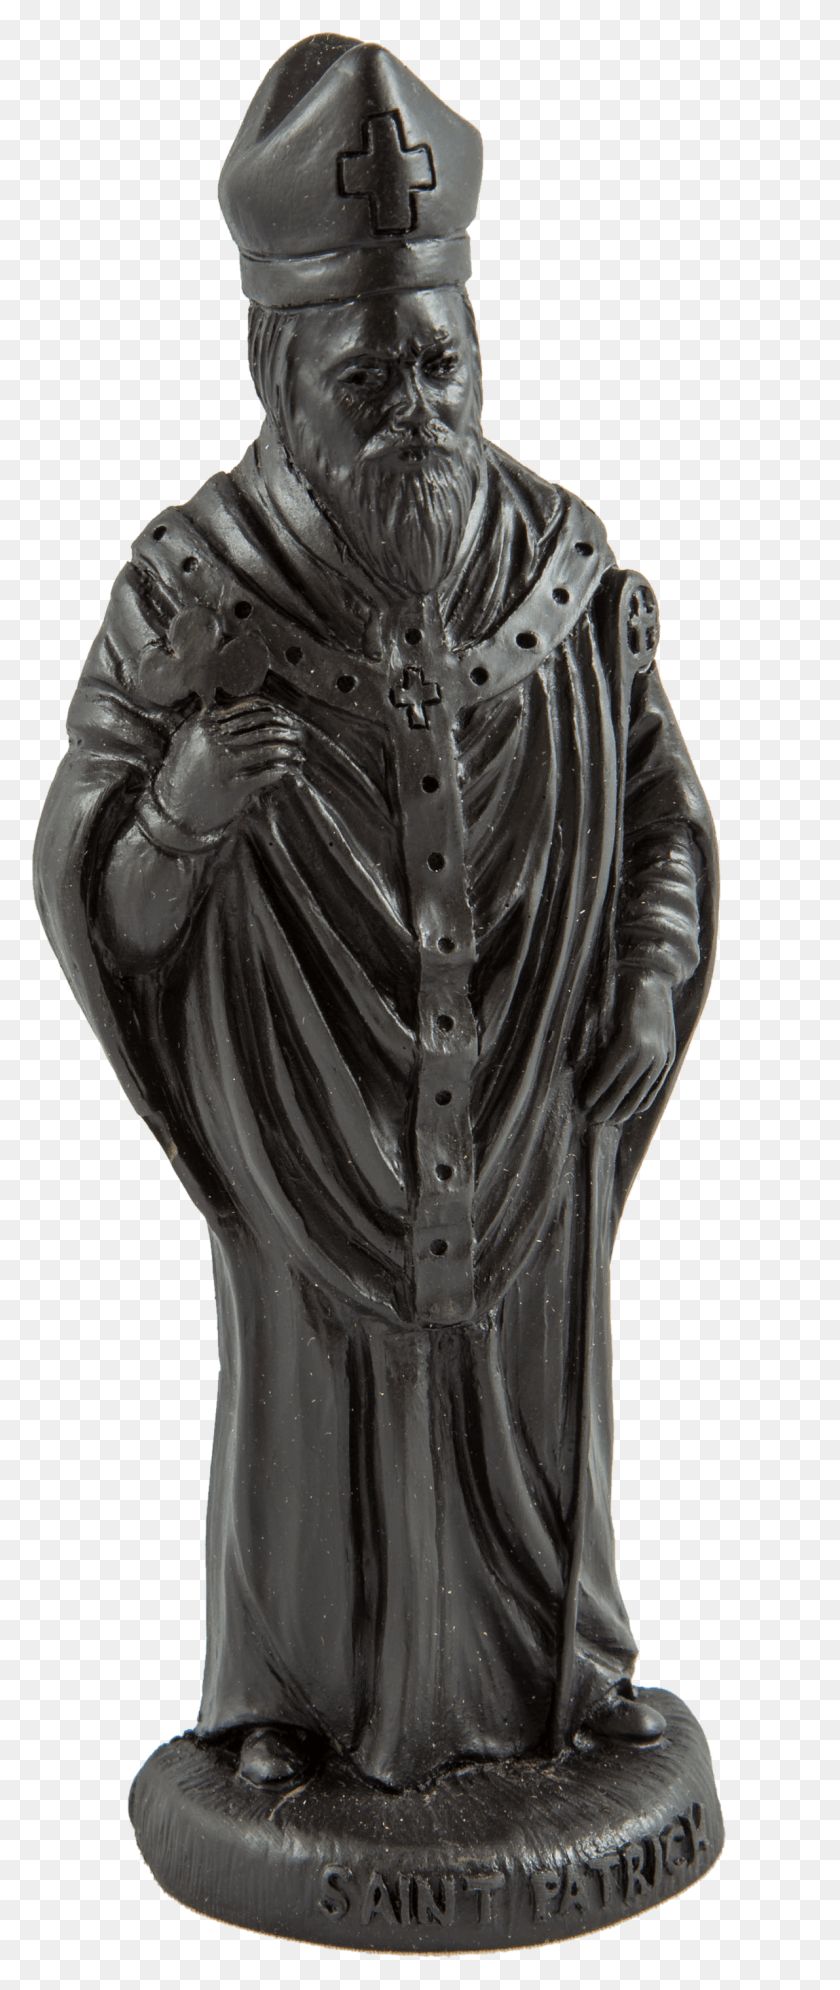 1191x2948 Статуя Статуи Святого Патрика Дерна, Скульптура, Человек Hd Png Скачать